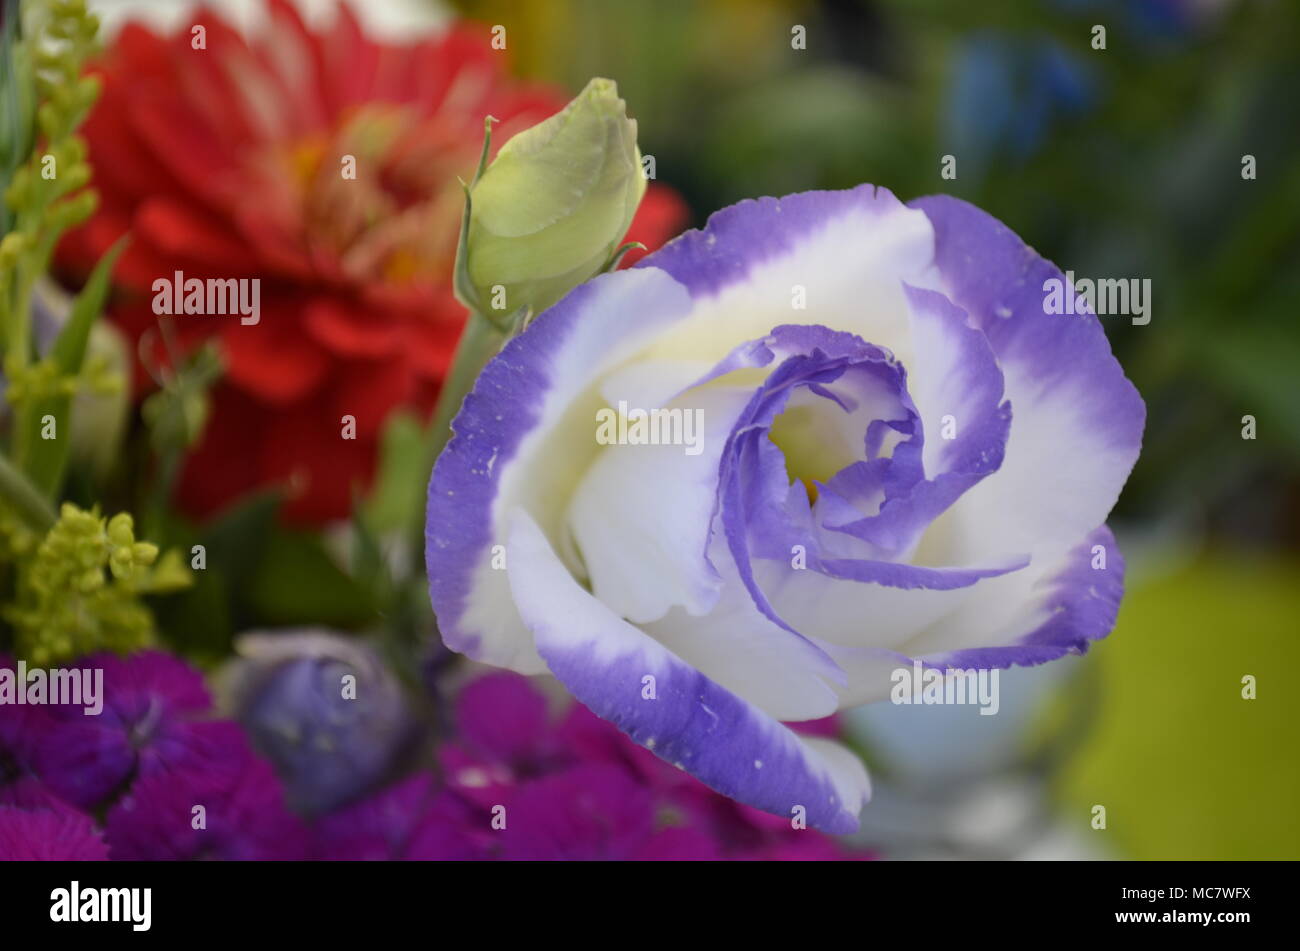 Arredate con gusto fresco e graziosi fiori close-up Foto Stock